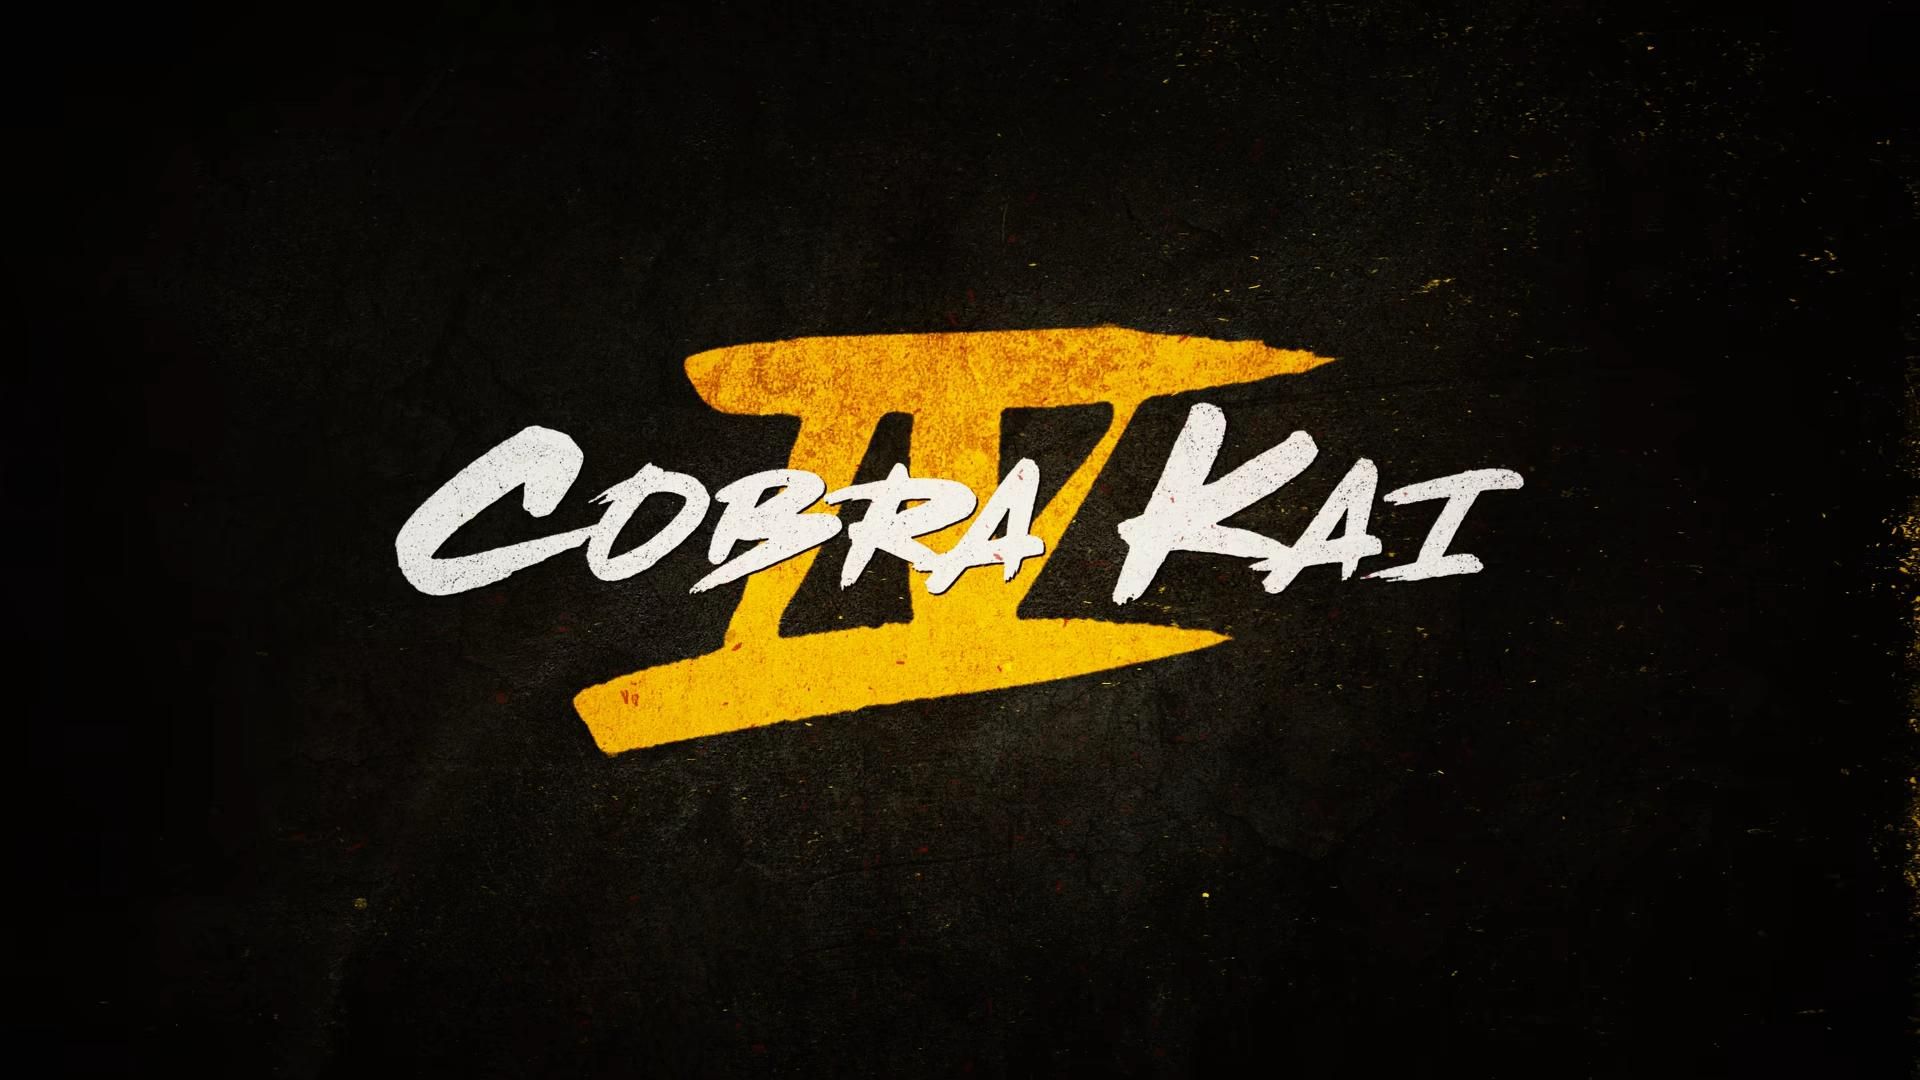 cobra kai season 4 release time